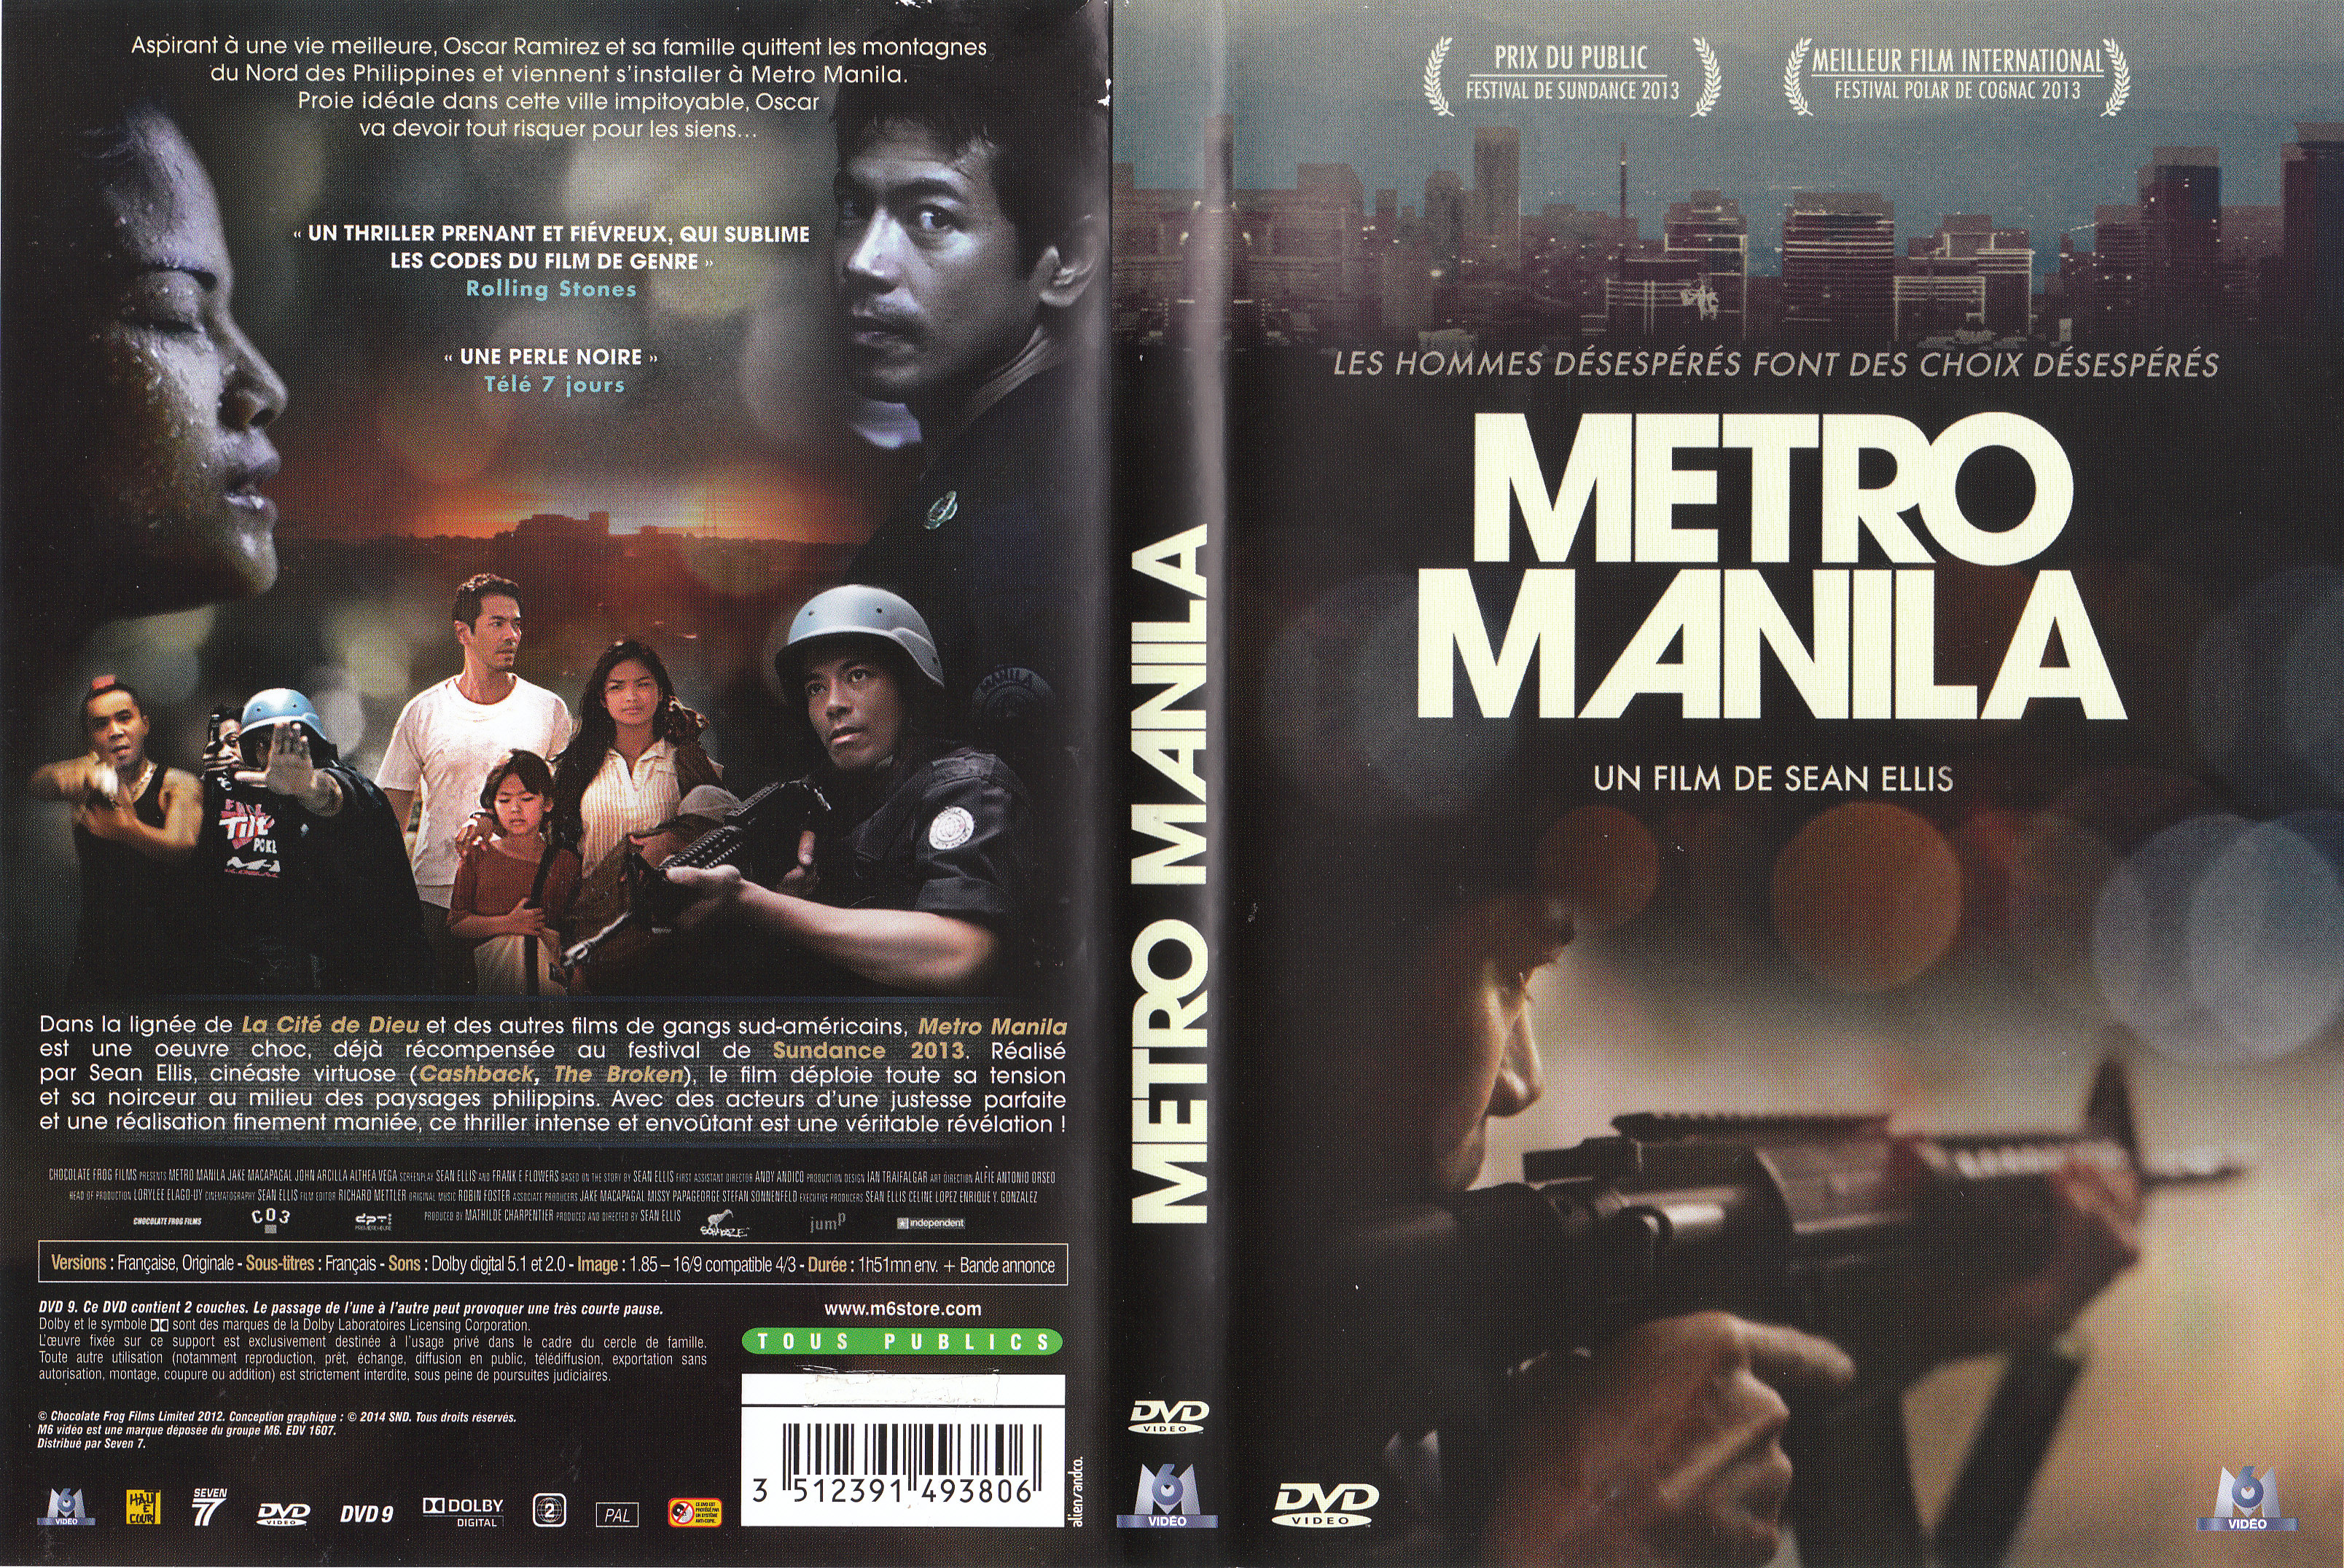 Jaquette DVD Metro Manila